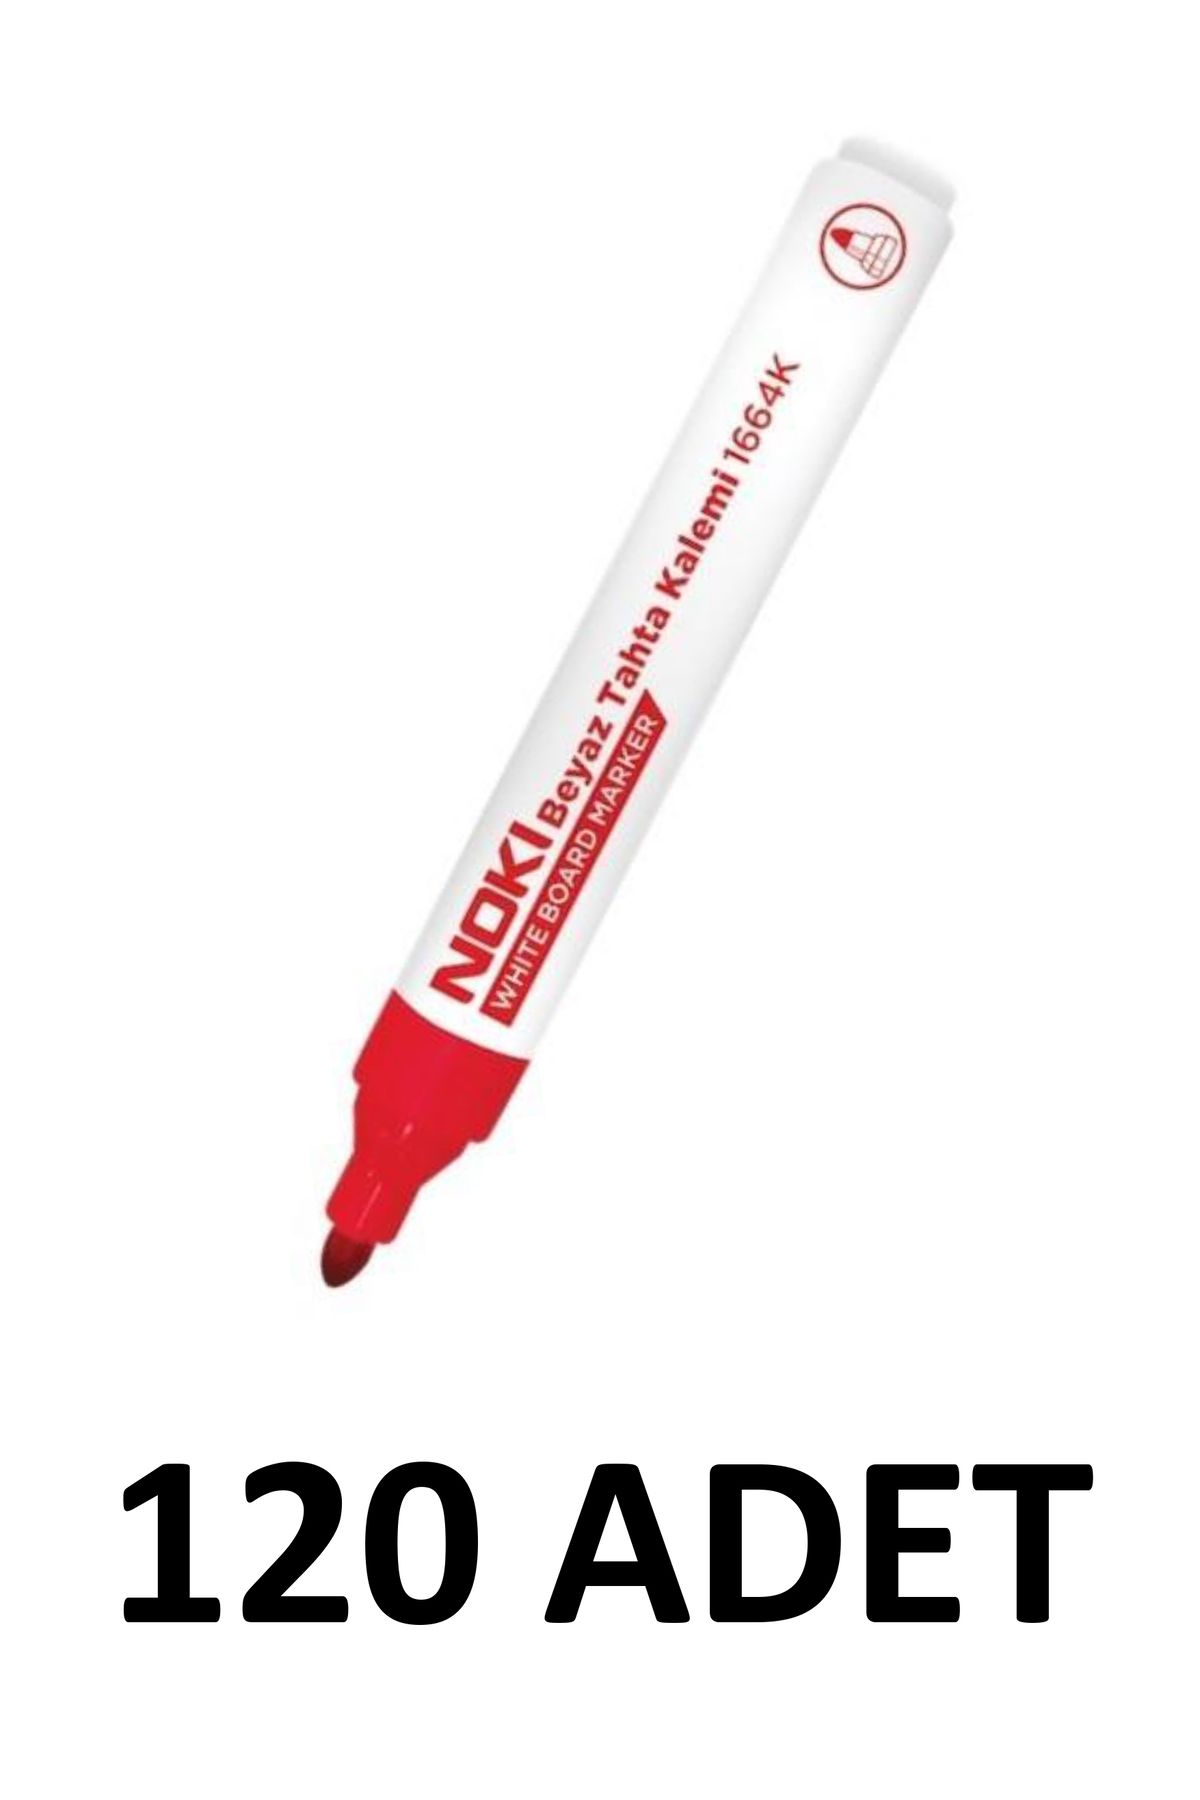 Noki 120 Adet 1664k Doldurulabilir Yazı Tahtası Kalemi Yuvarlak Uç Kırmızı